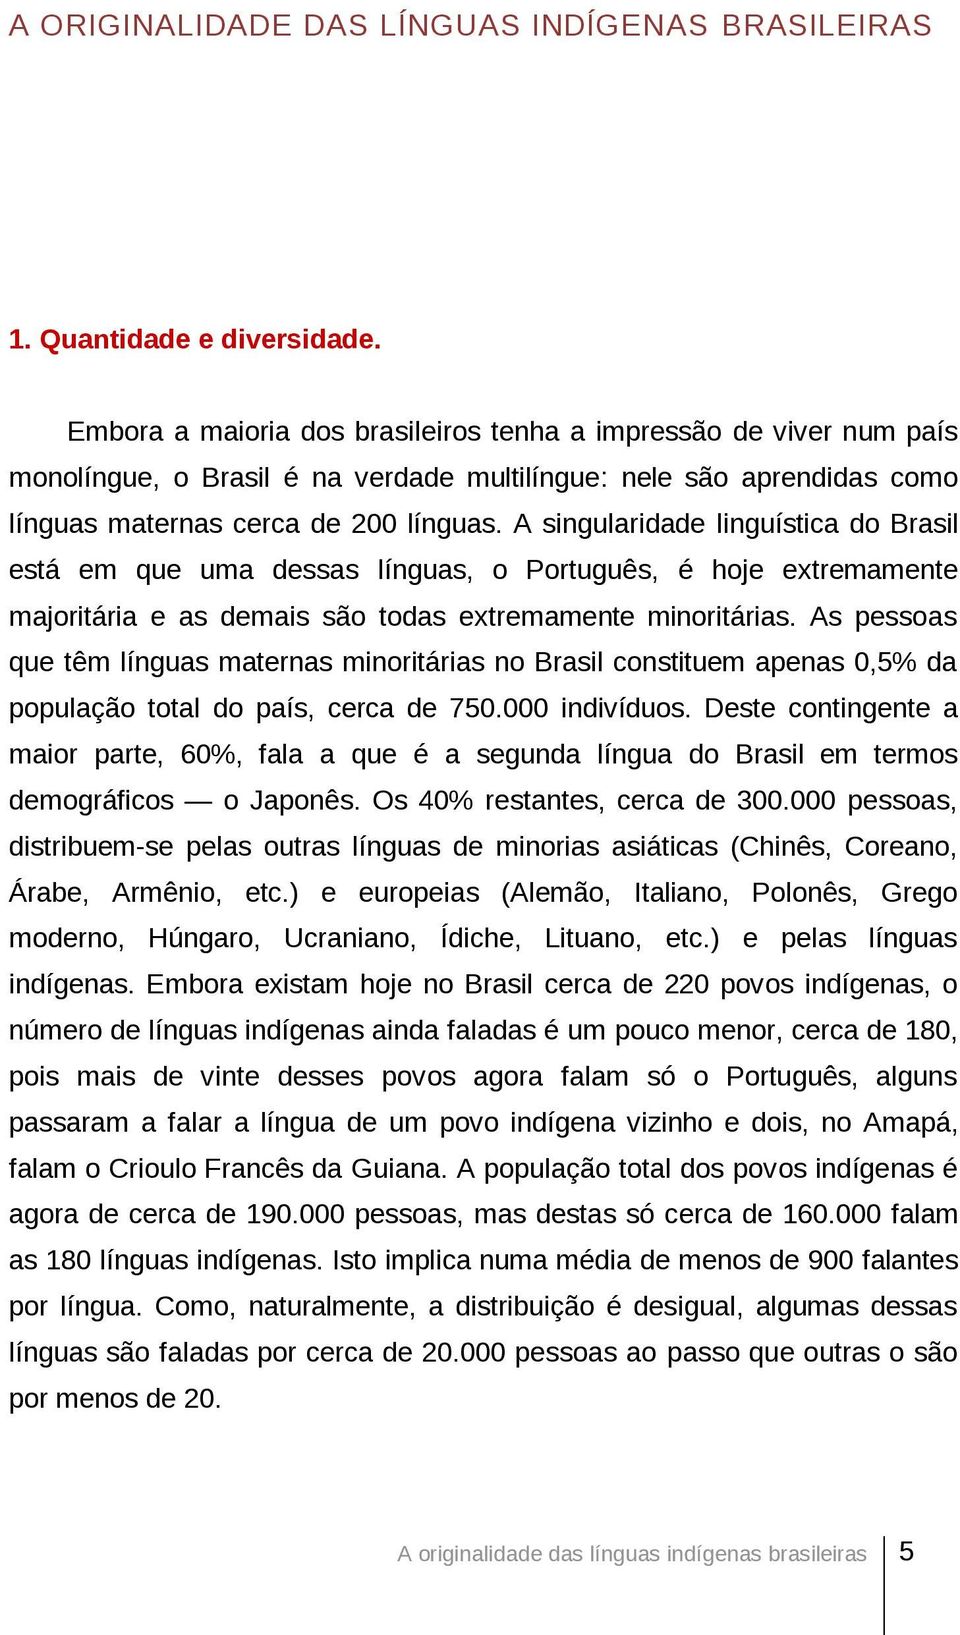 A singularidade linguística do Brasil está em que uma dessas línguas, o Português, é hoje extremamente majoritária e as demais são todas extremamente minoritárias.